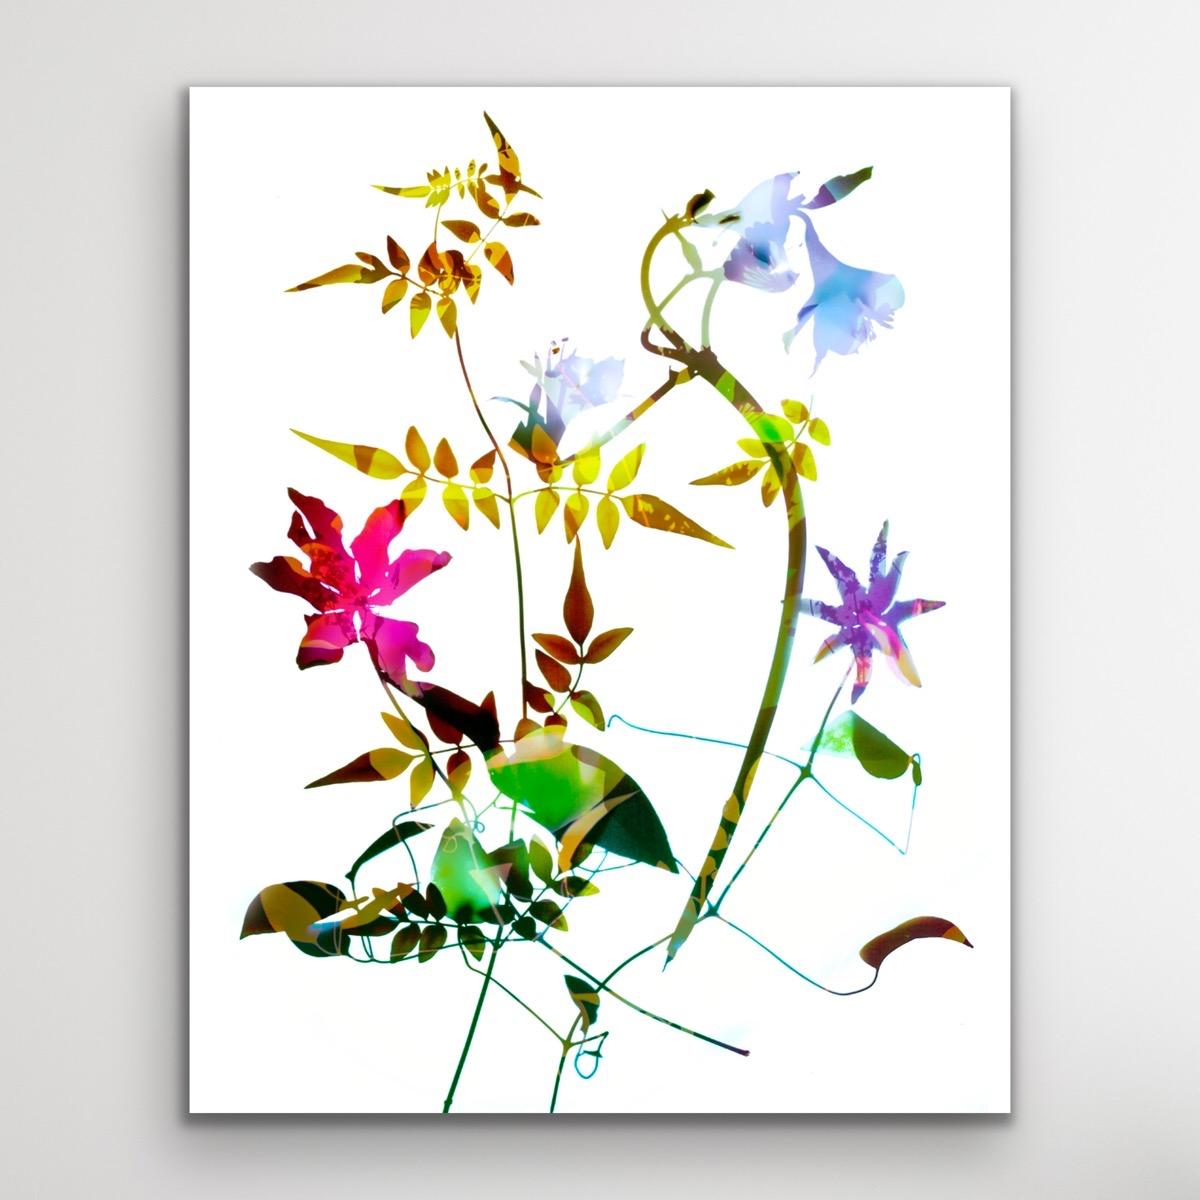 Gentle Spirit n° 12, Art floral d'affirmation, Art contemporain léger et brillant - Contemporain Print par Allan Forsyth